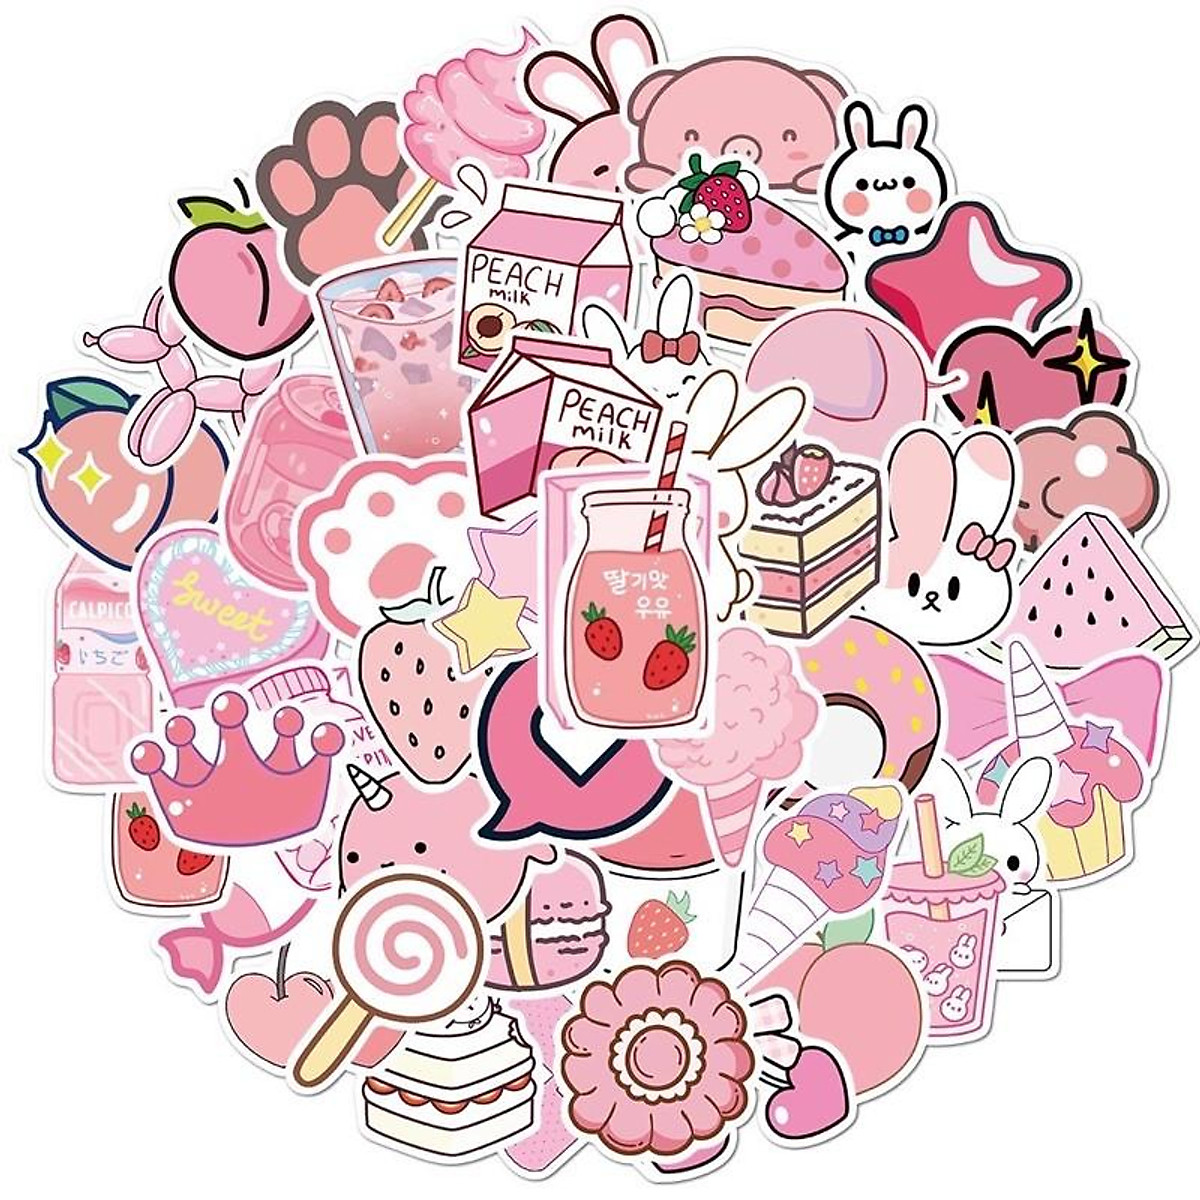 Mua 10 Sticker cute dán màu hồng hường chống thấm nước | Tiki